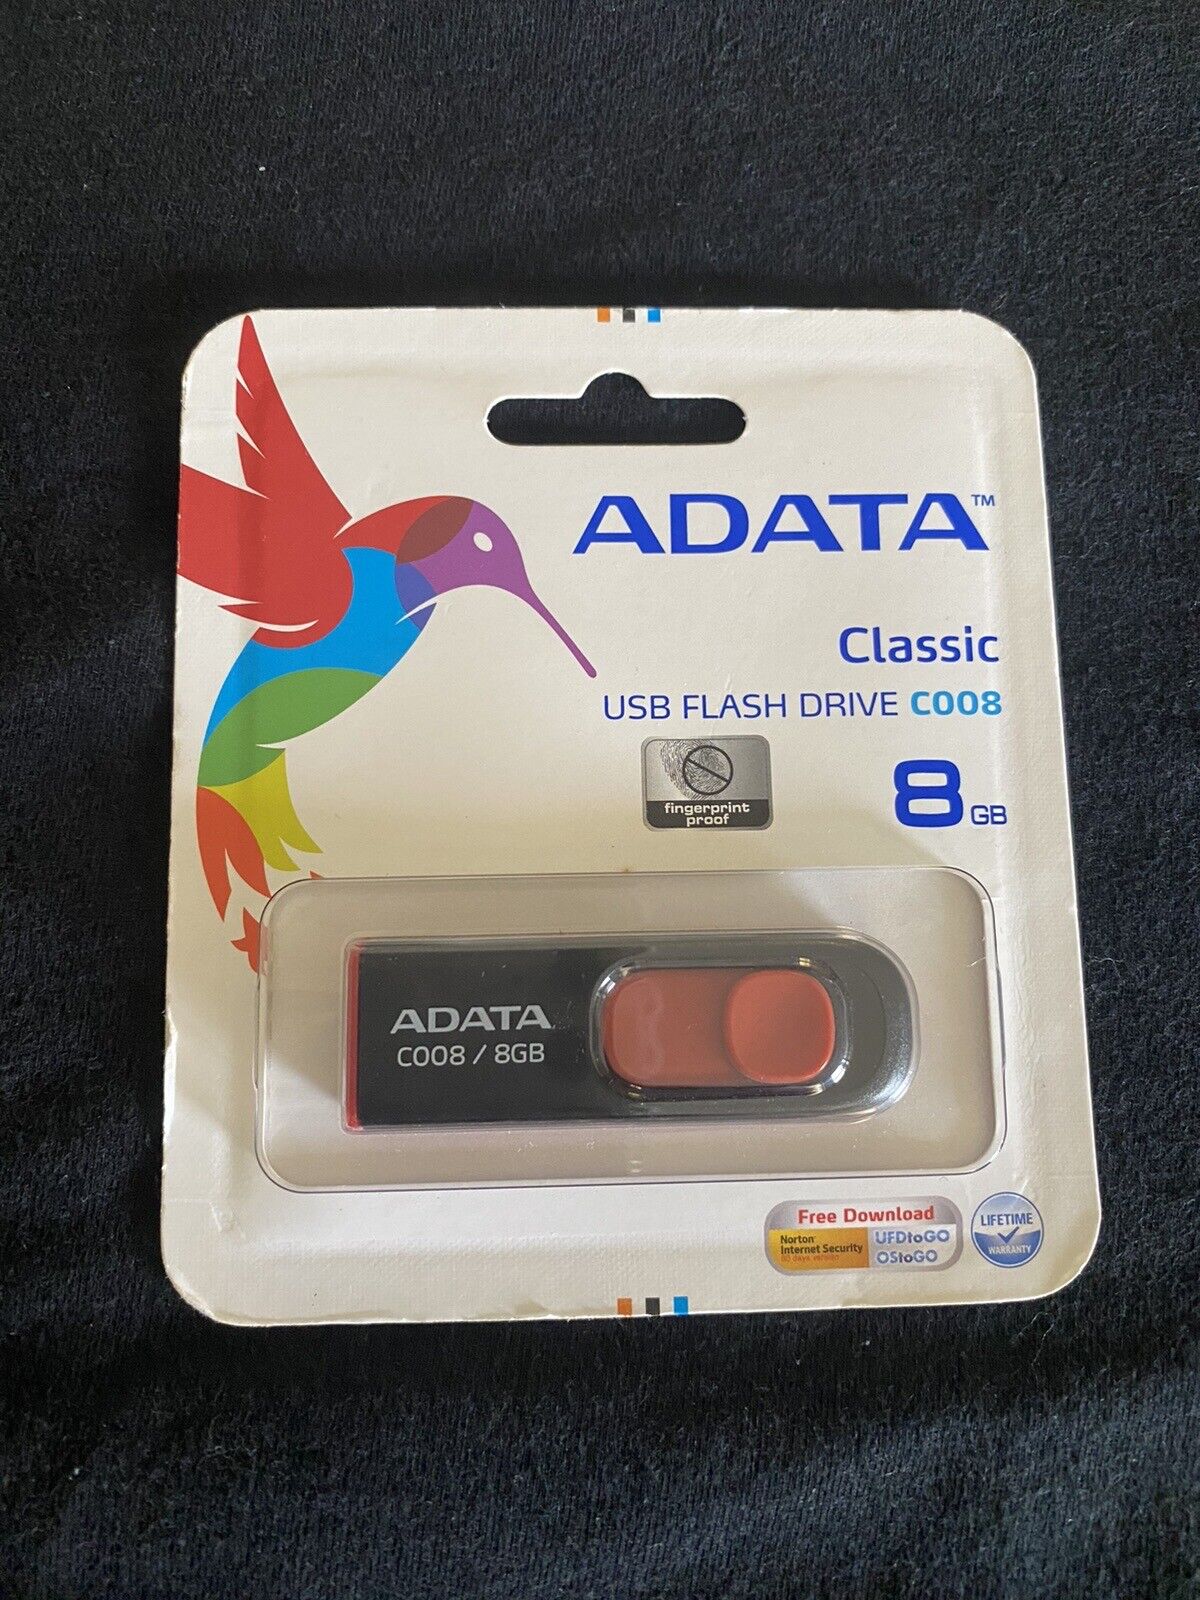 A-Data C008/8GB USB Flash Drive